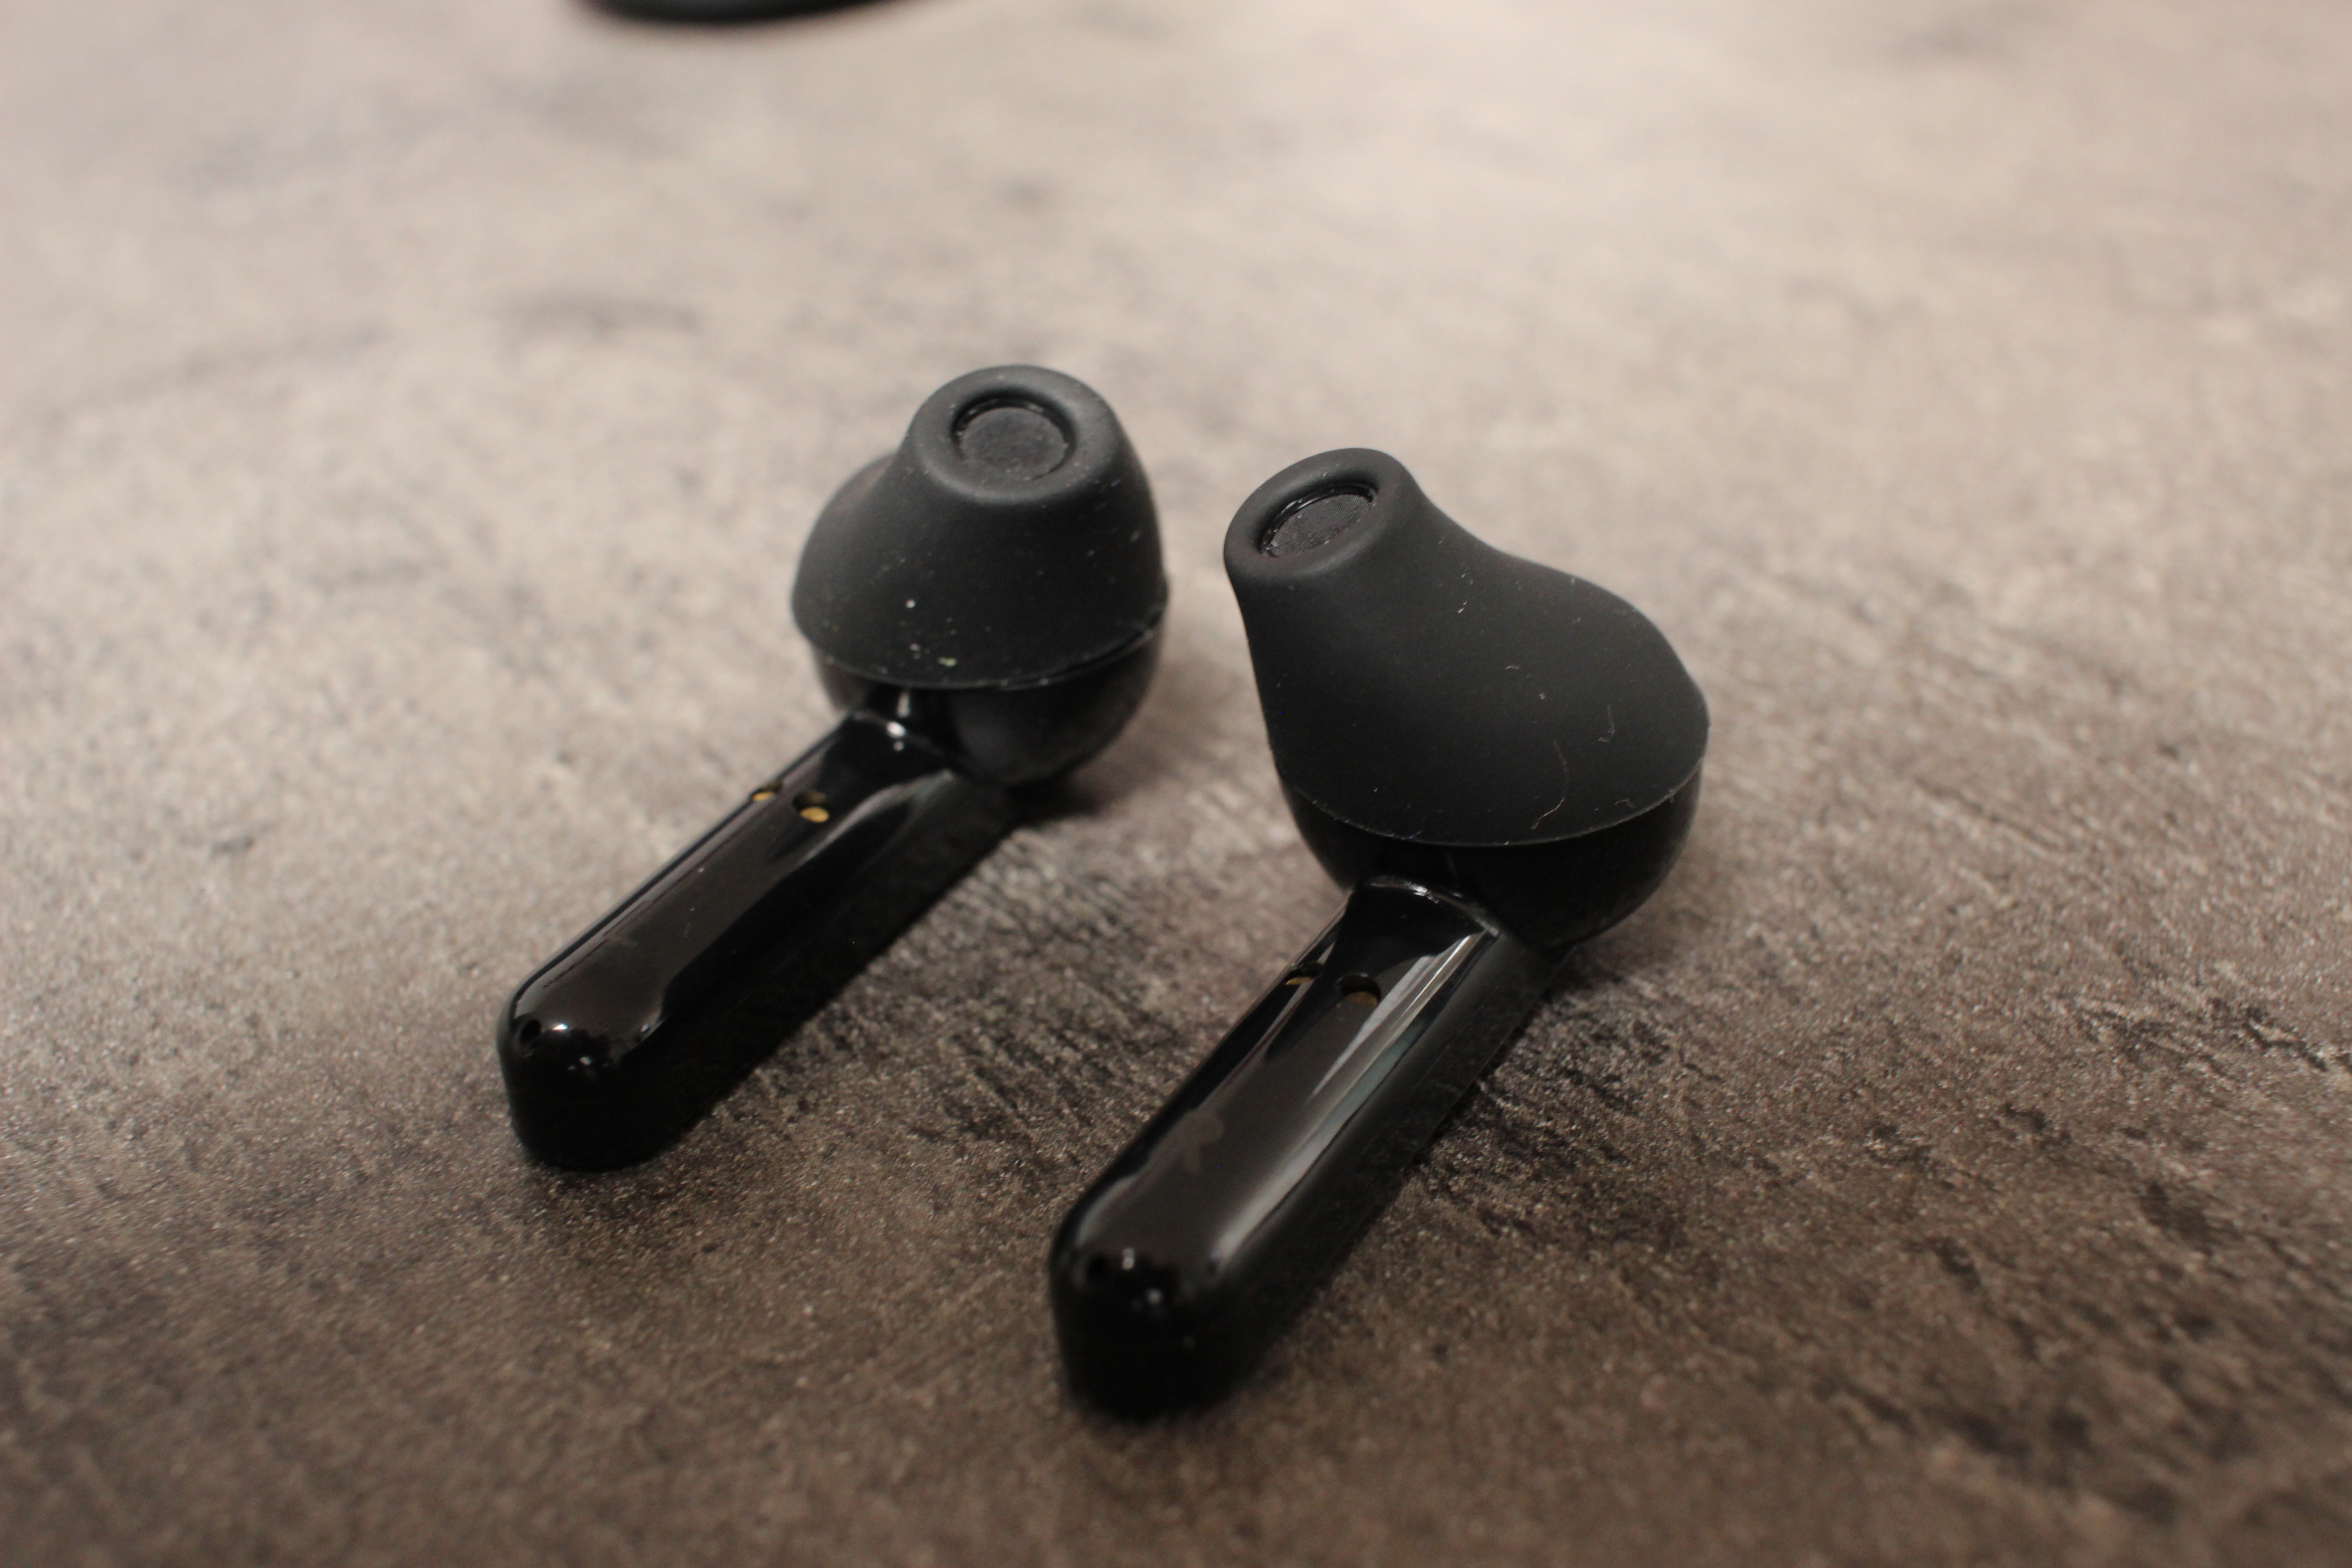 QCY-T3 wireless In-Ear Kopfhörer mit IPX5 Wasserresistenz für 14,84€